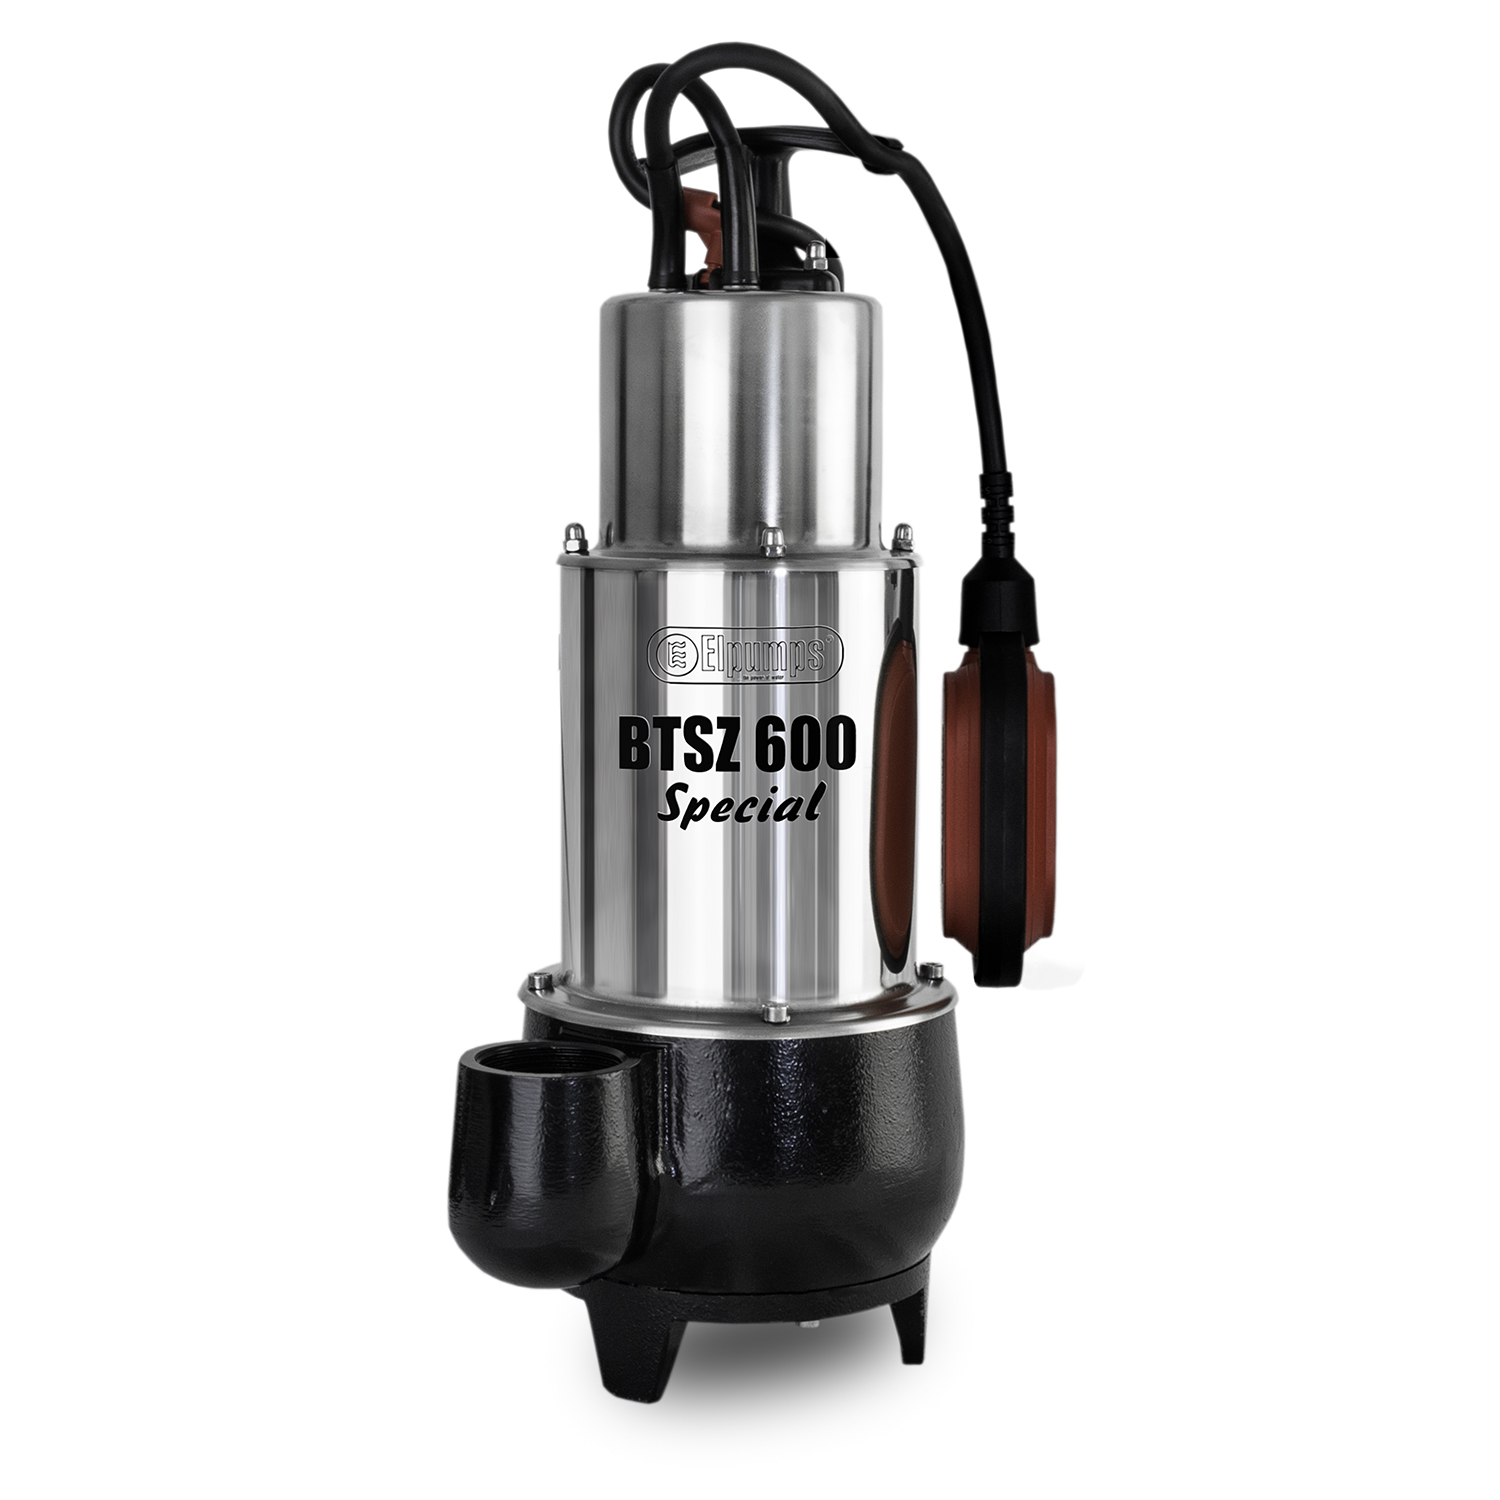 BTSZ 600 SPECIAL Pompe à eau sale, 1600 W, 32.000 l/h